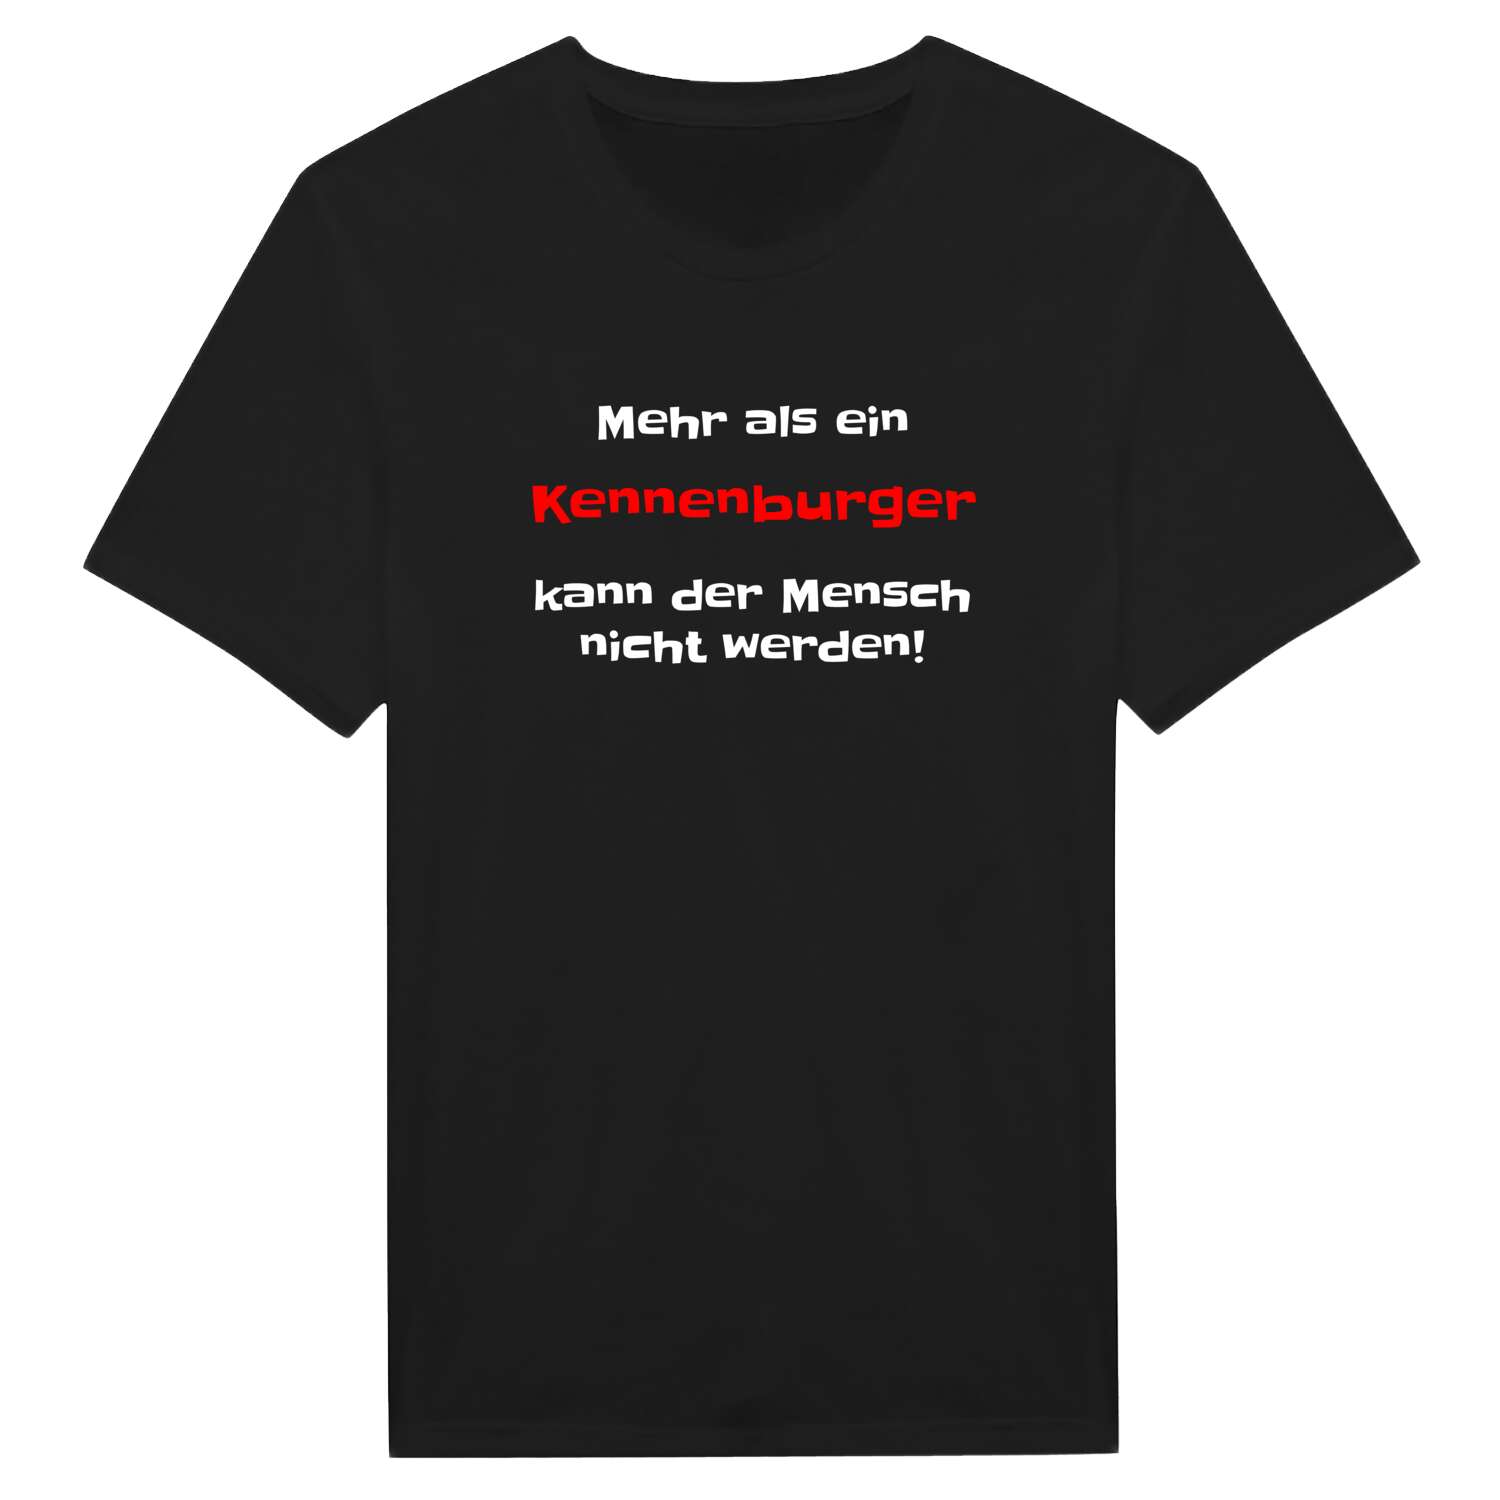 Kennenburg T-Shirt »Mehr als ein«